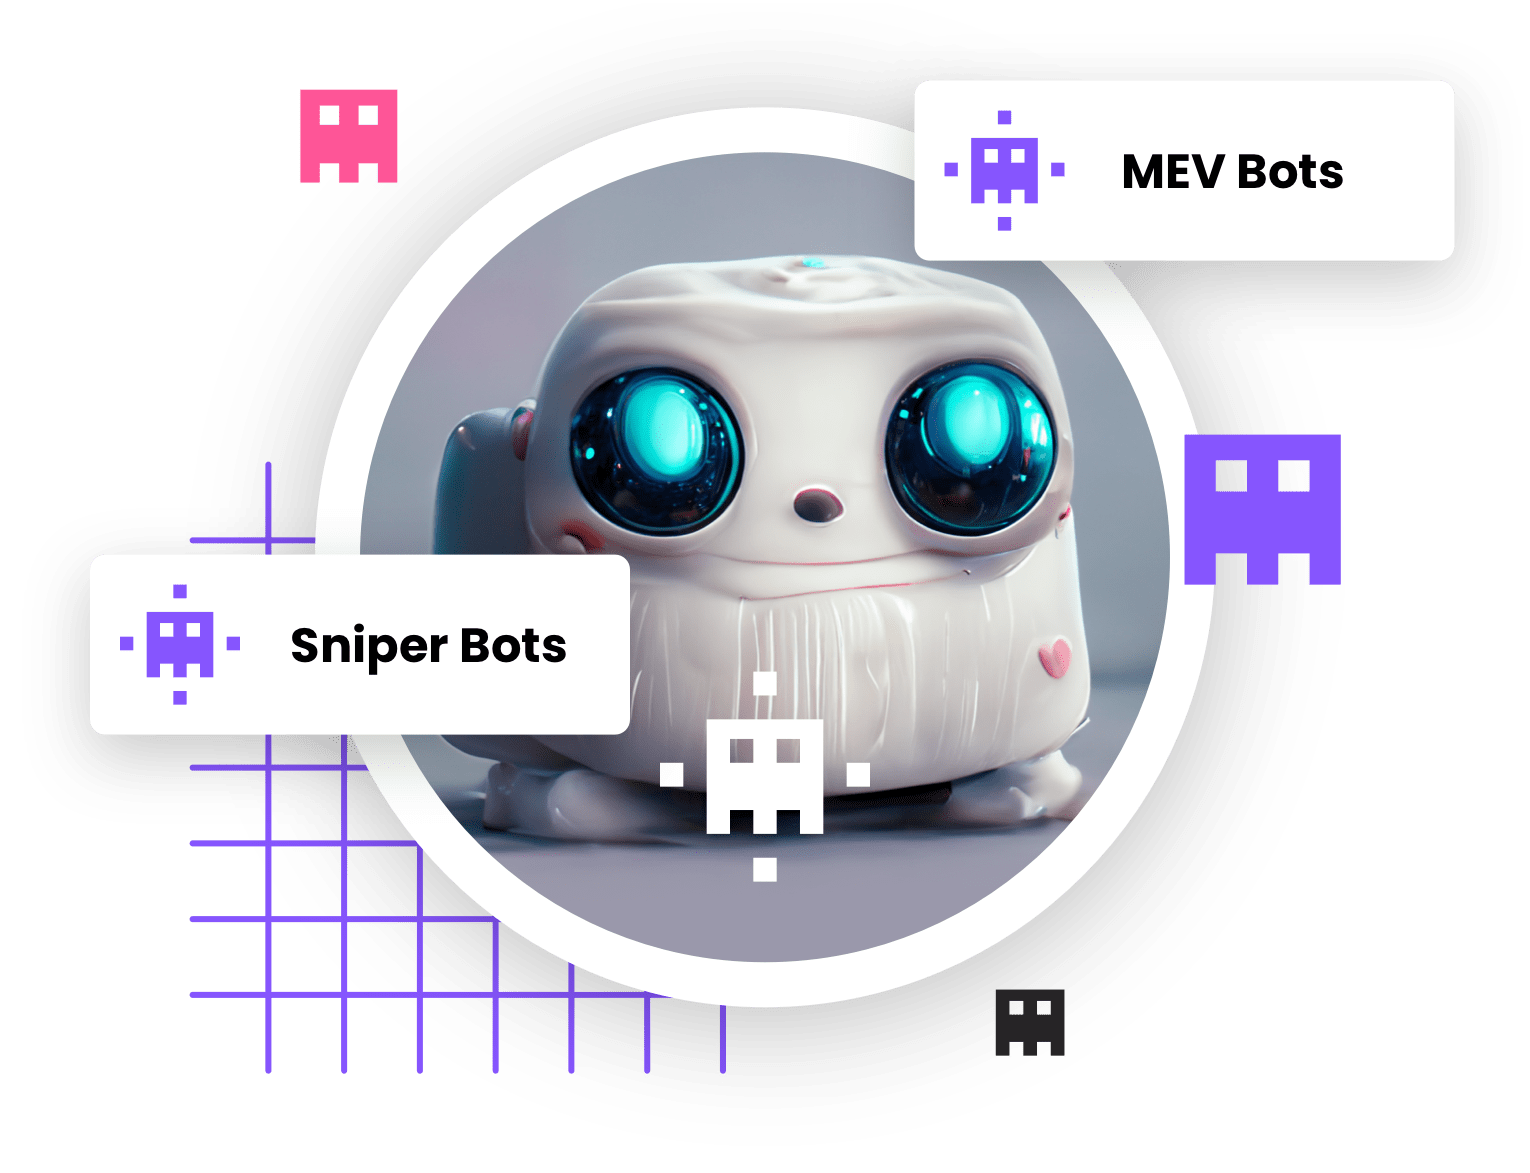 Иллюстрация робота с большими глазами на абстрактном фоне с пиксельными иконками и подписями, обозначающими различные типы ботов, включая MEV ботов и снайперских ботов в контексте криптовалют или автоматизированных торговых систем.